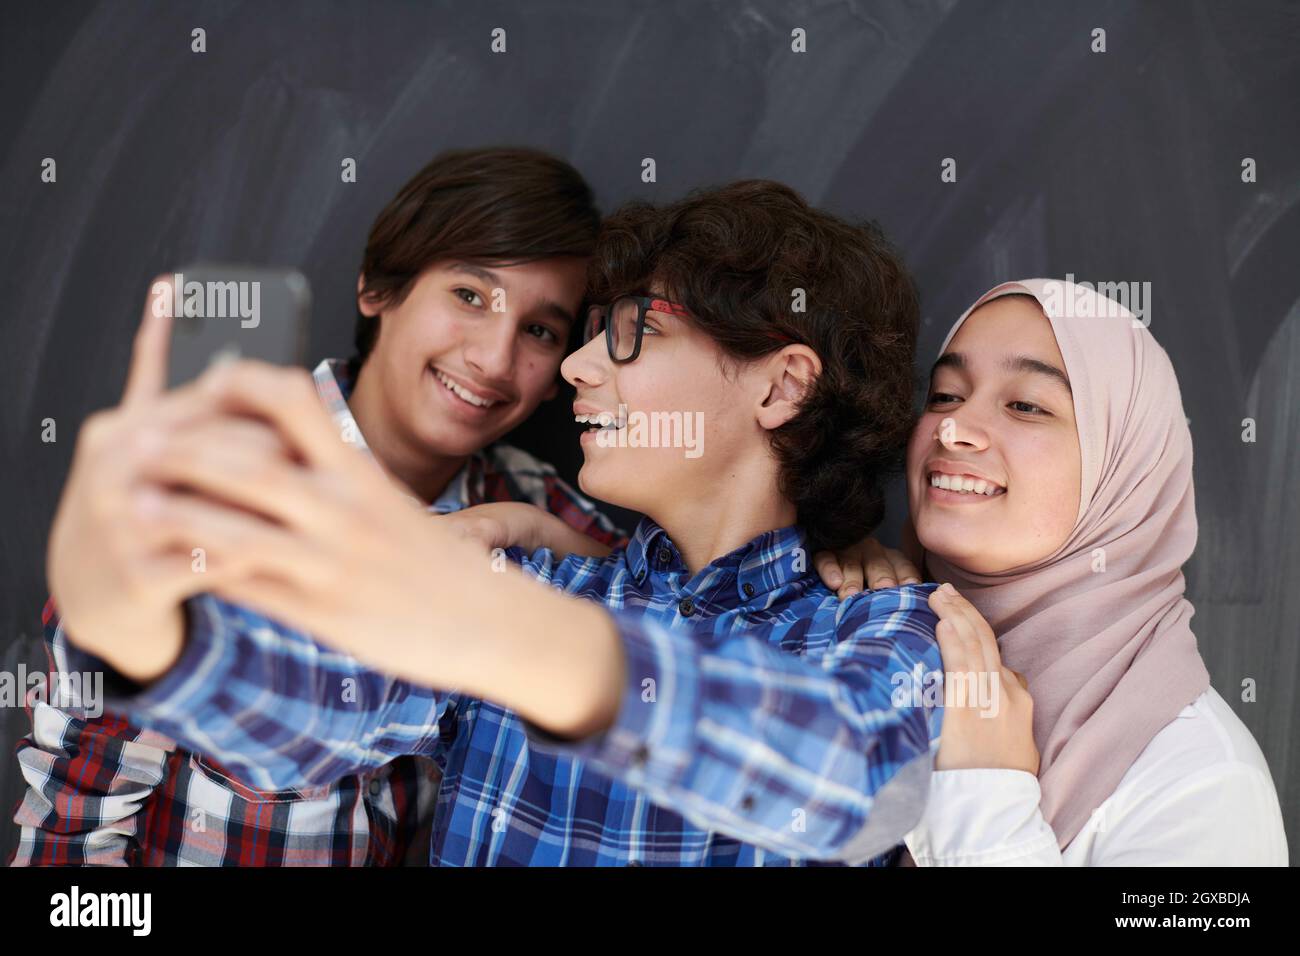 Arab legal age teenager dance movie selfie